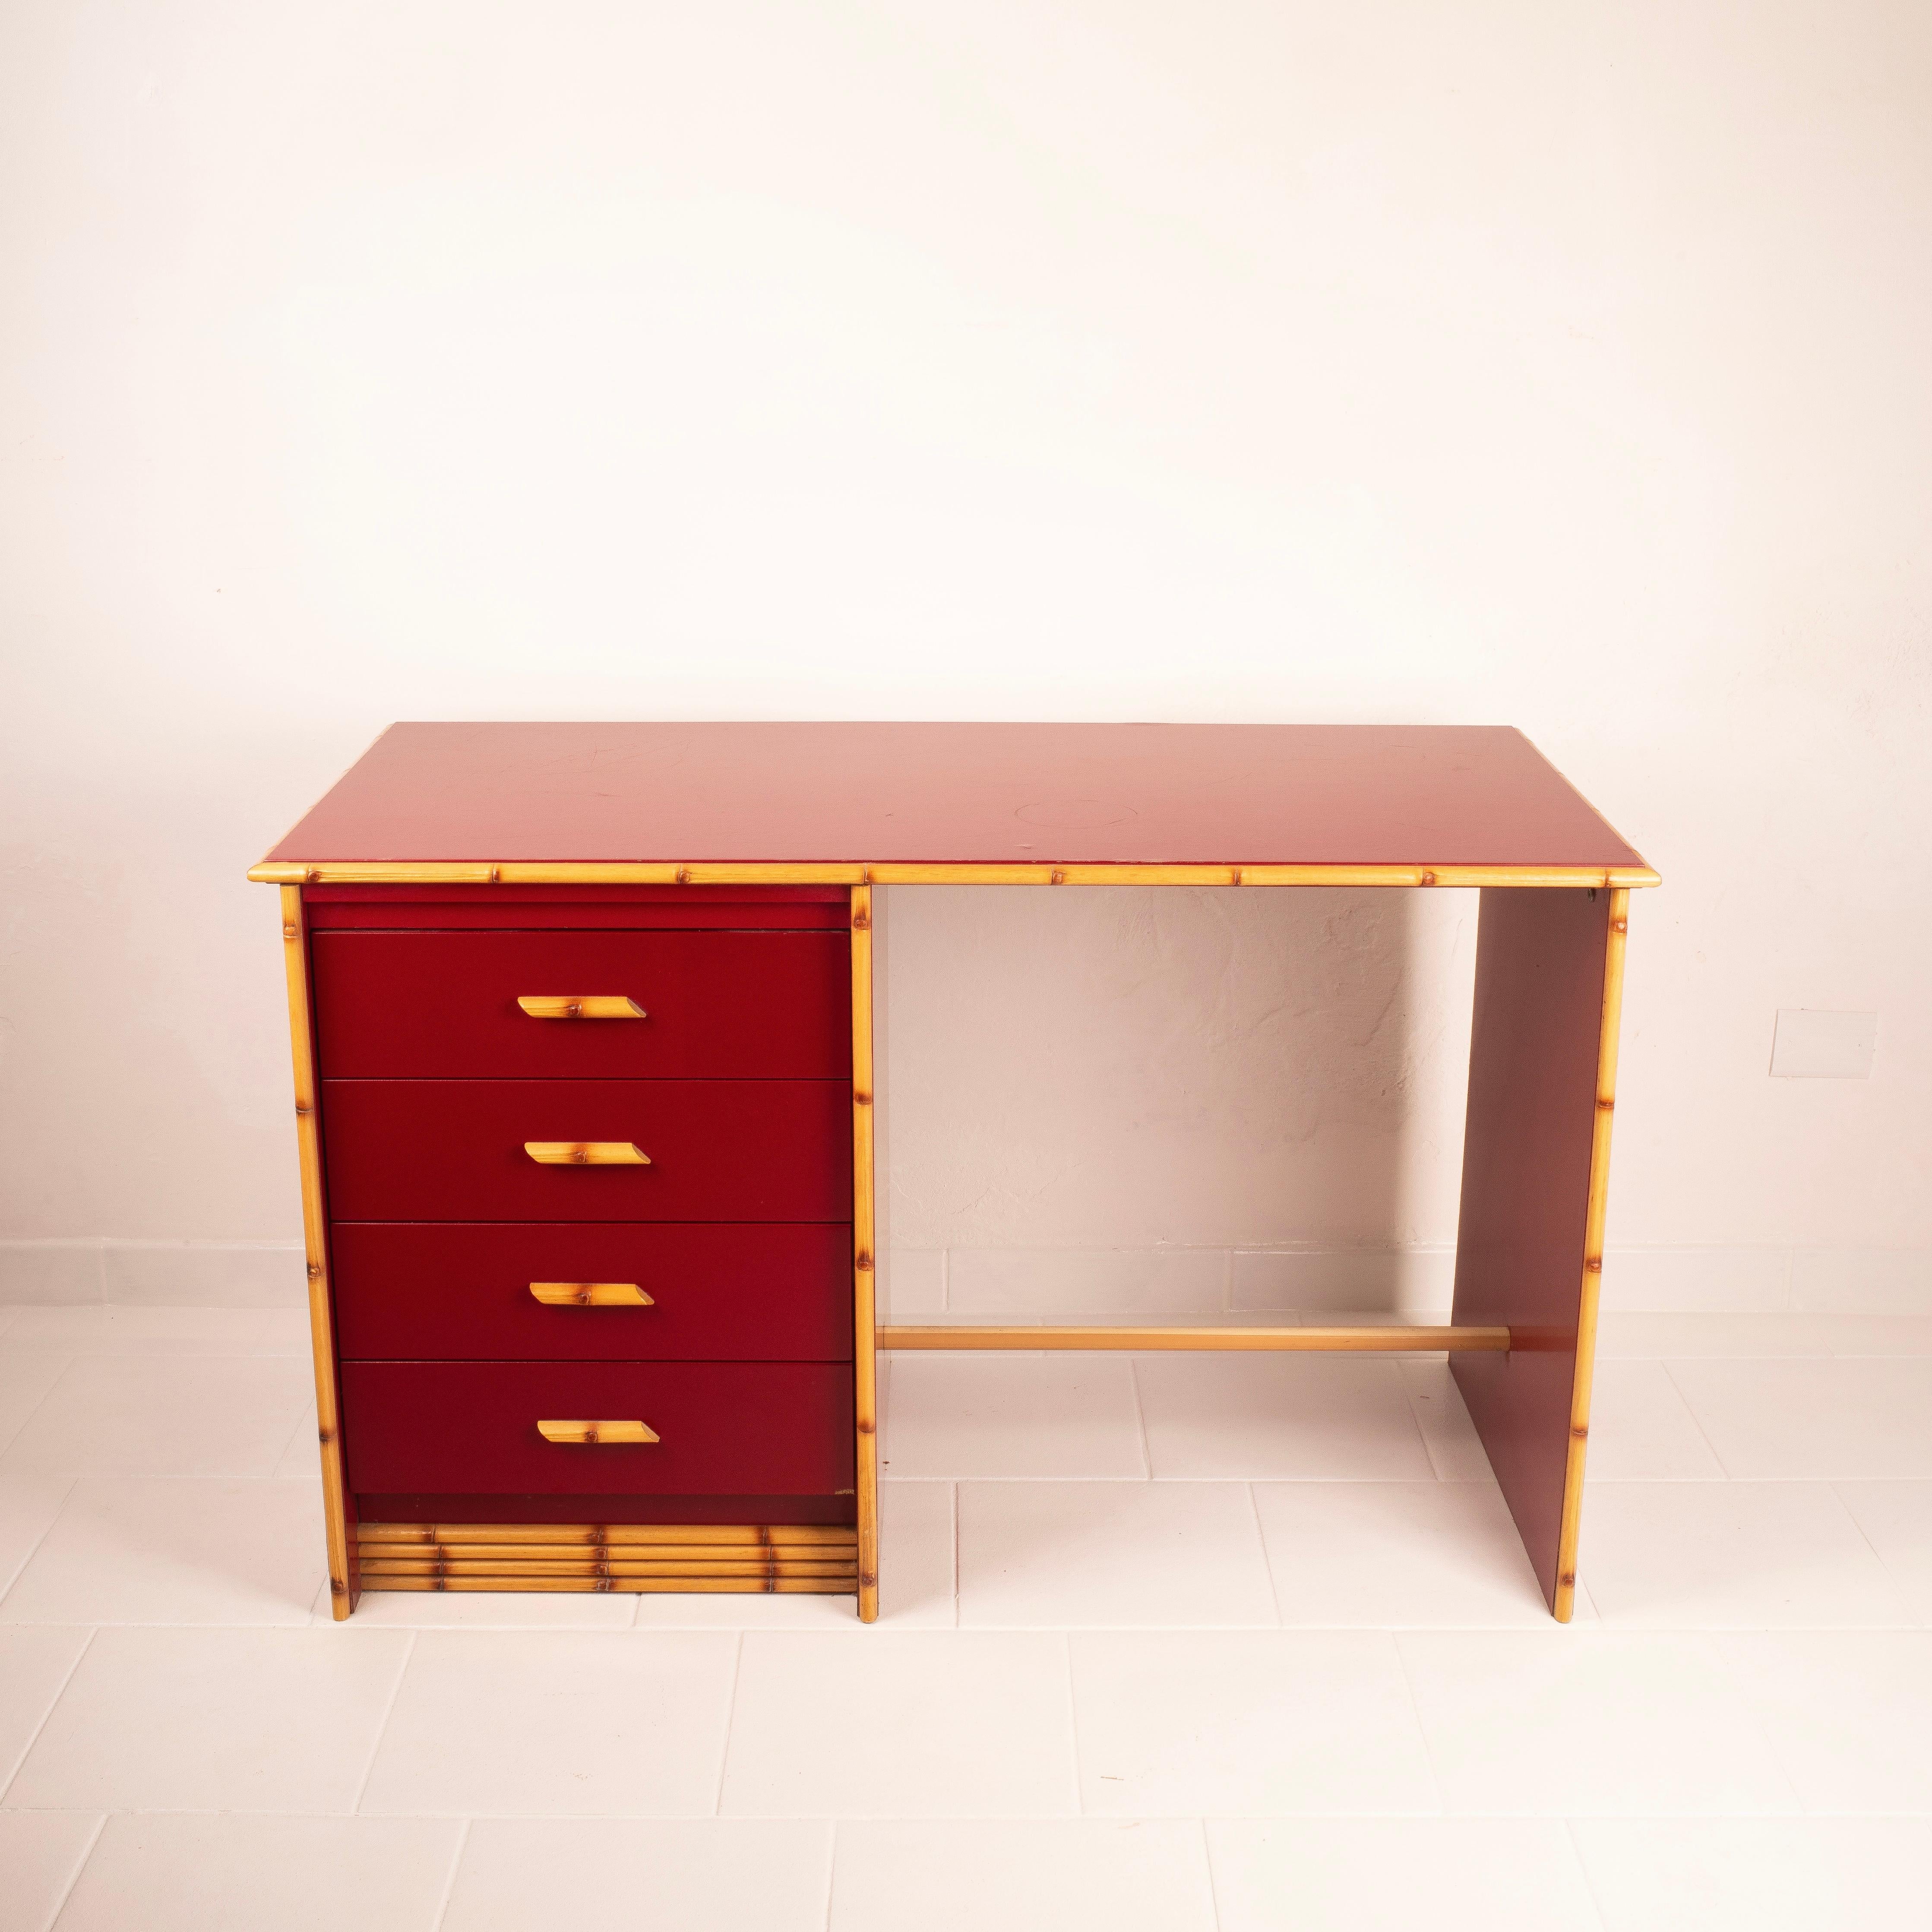 Esplora il nostro eccezionale set di mobili vintage composto da una scrivania laccata rossa con dettagli effetto Bamboo in massello di Acero e una sedia in Vimini abbinata.
 
Questi pezzi unici, esempio della grande manifattura Italiana, sono in